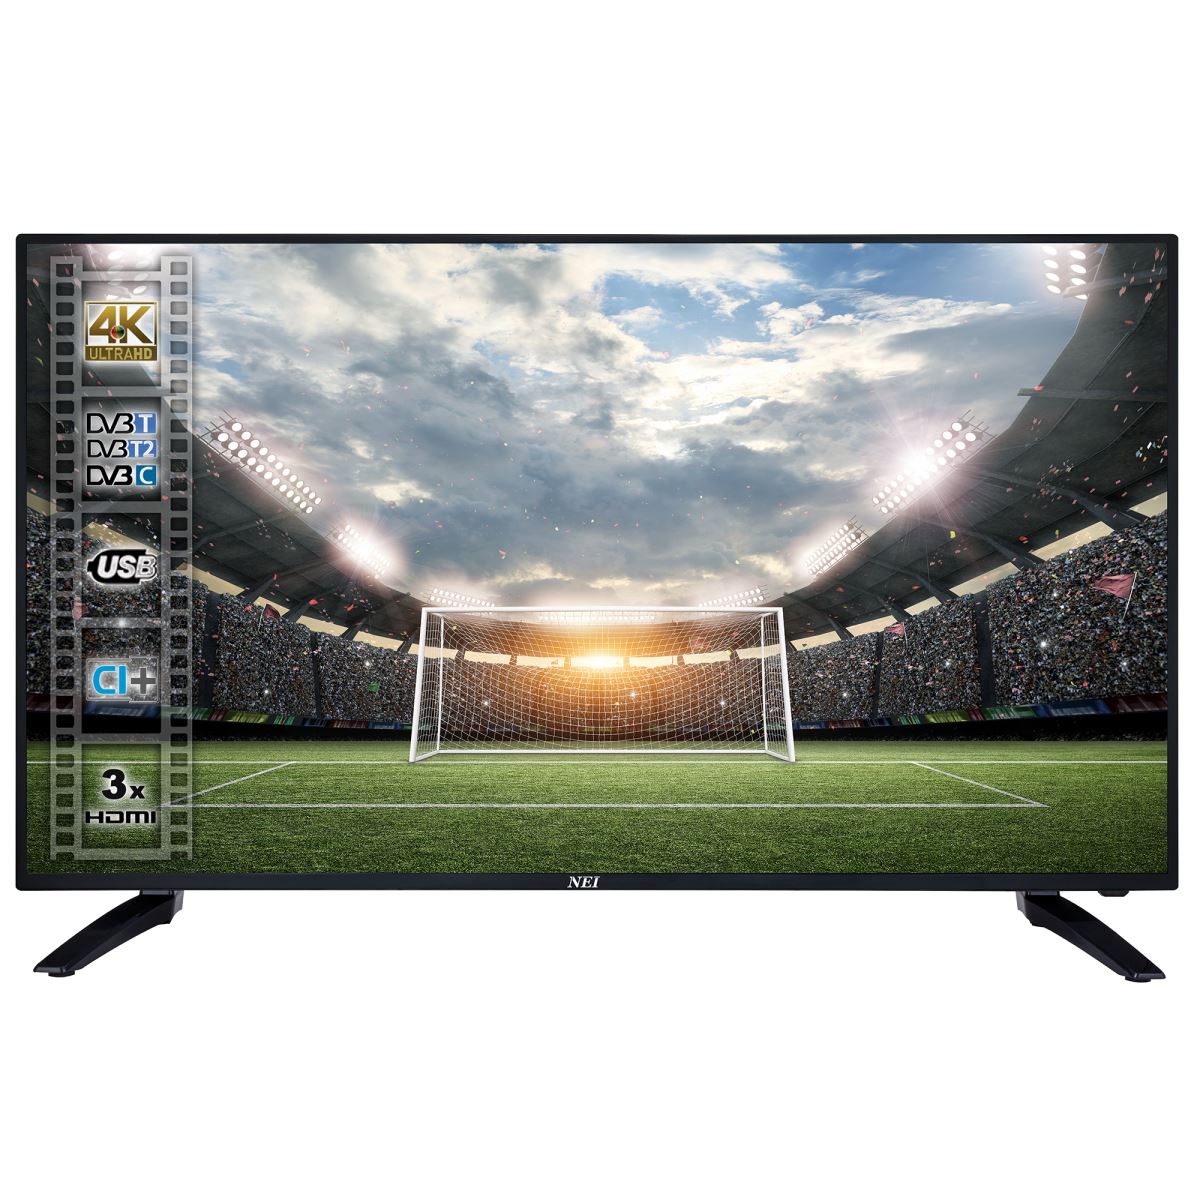 Televizor LED NEI 40NE6000, 101 cm, 4K Ultra HD, Slot CI+, Negru